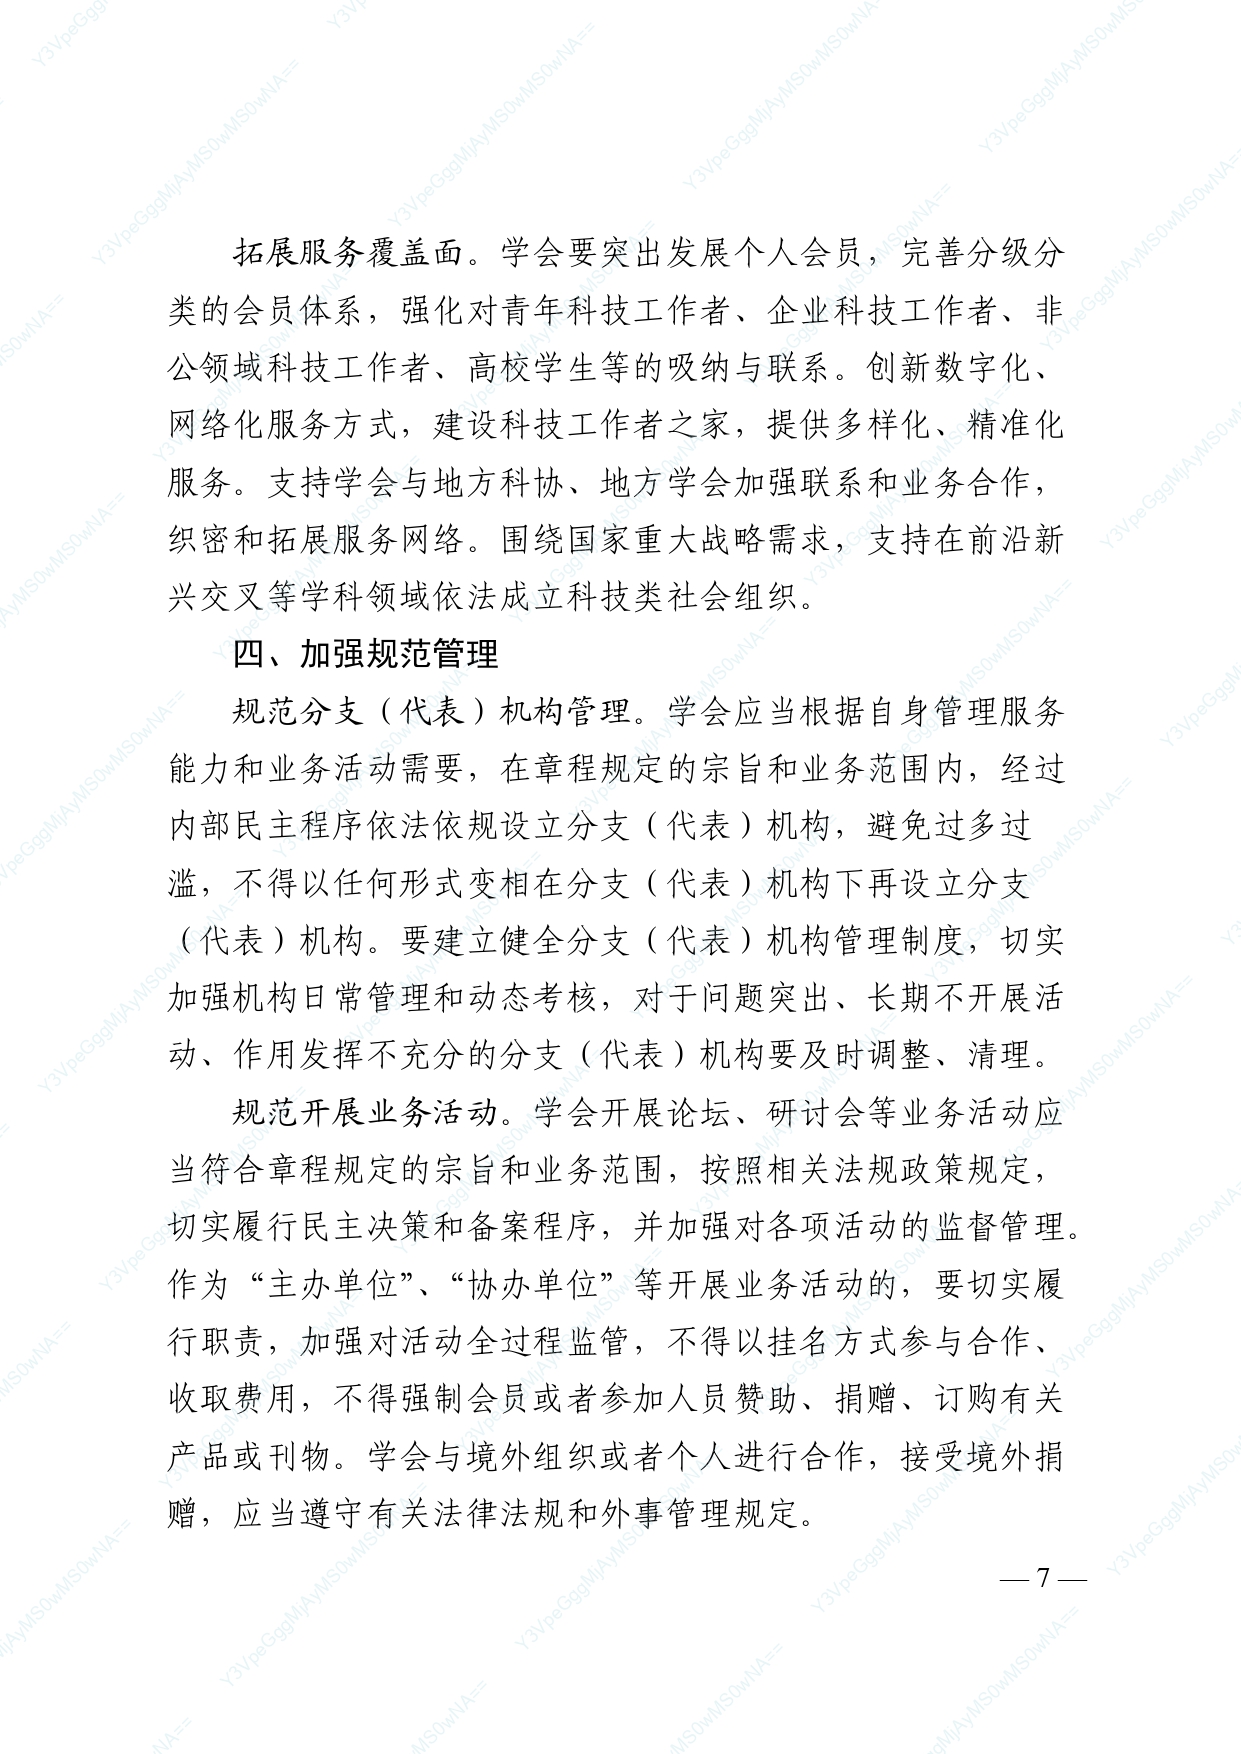 中国科协 民政部印发《关于进一步推动中国科协学会创新发展的意见》的通知_page-0007.jpg